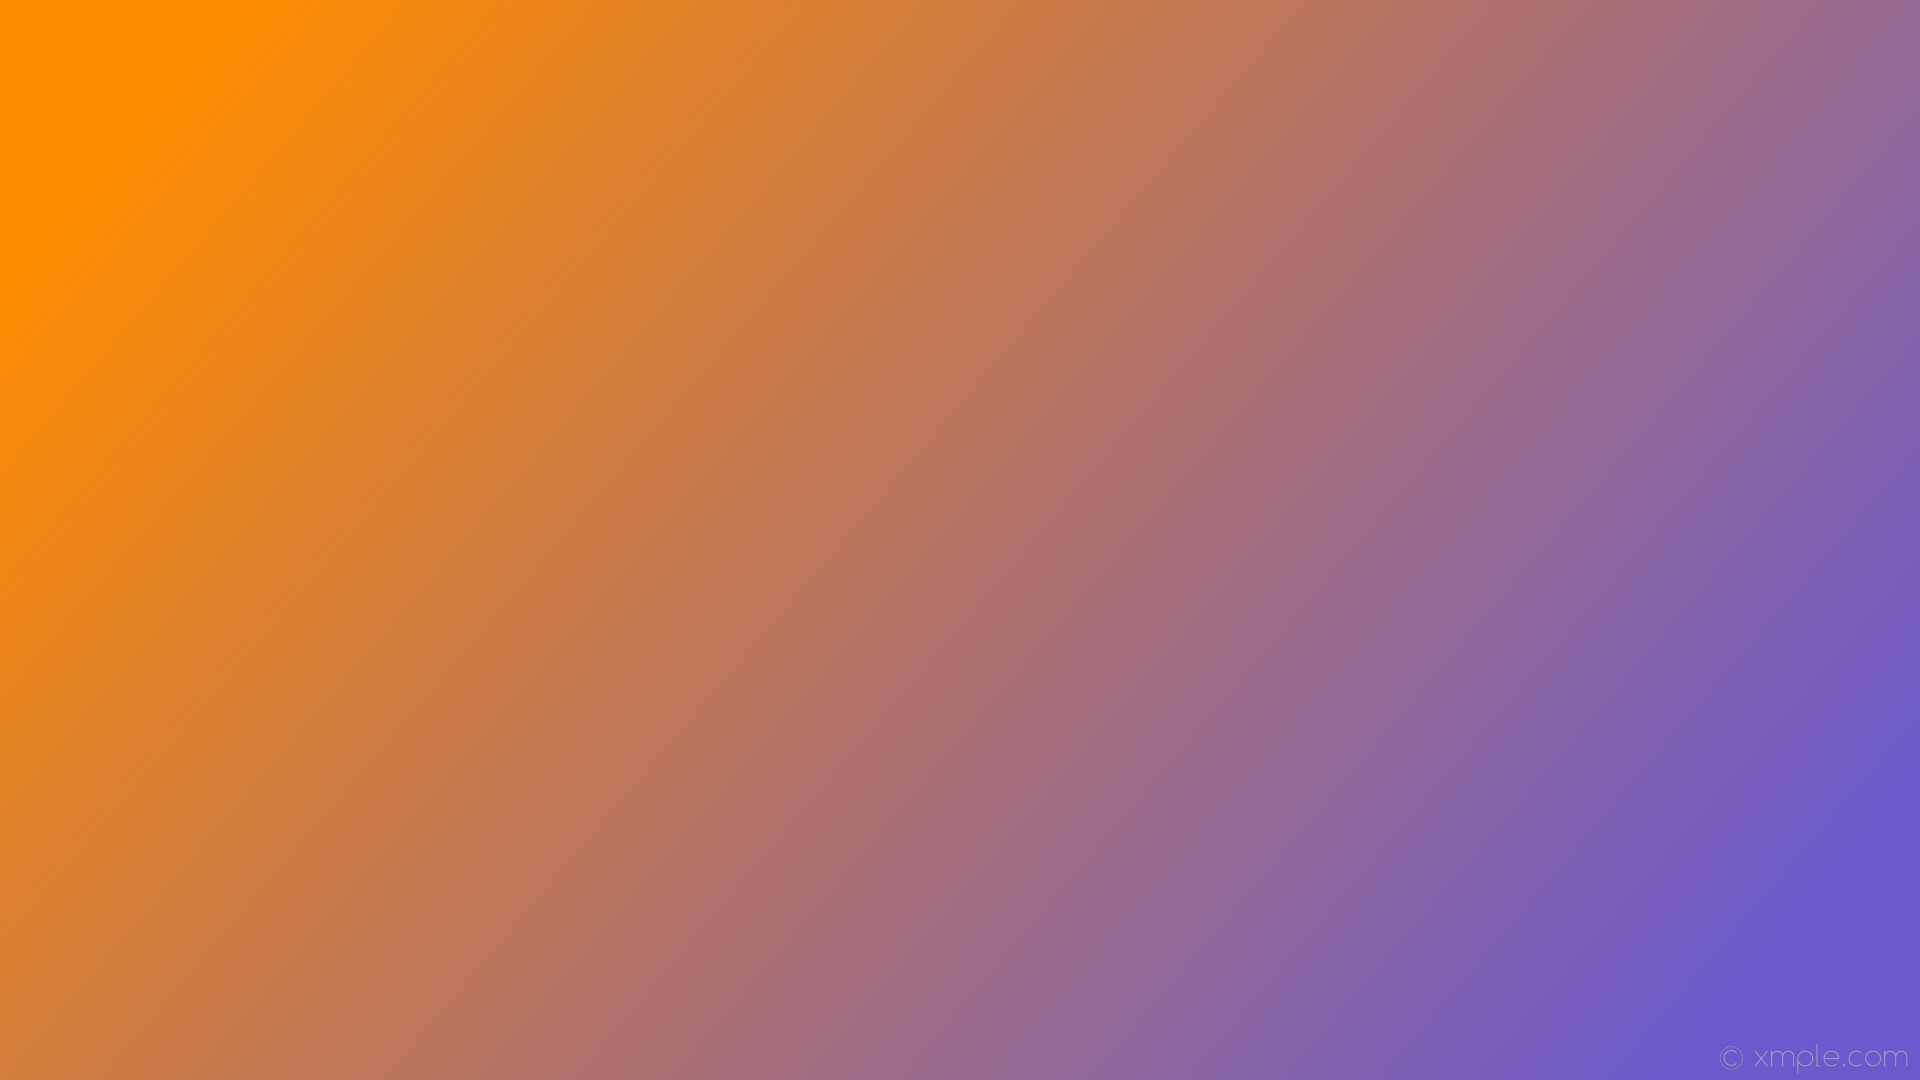 1920x1080 wallpaper purple orange gradient linear slate blue dark orange #6a5acd  #ff8c00 345Â°